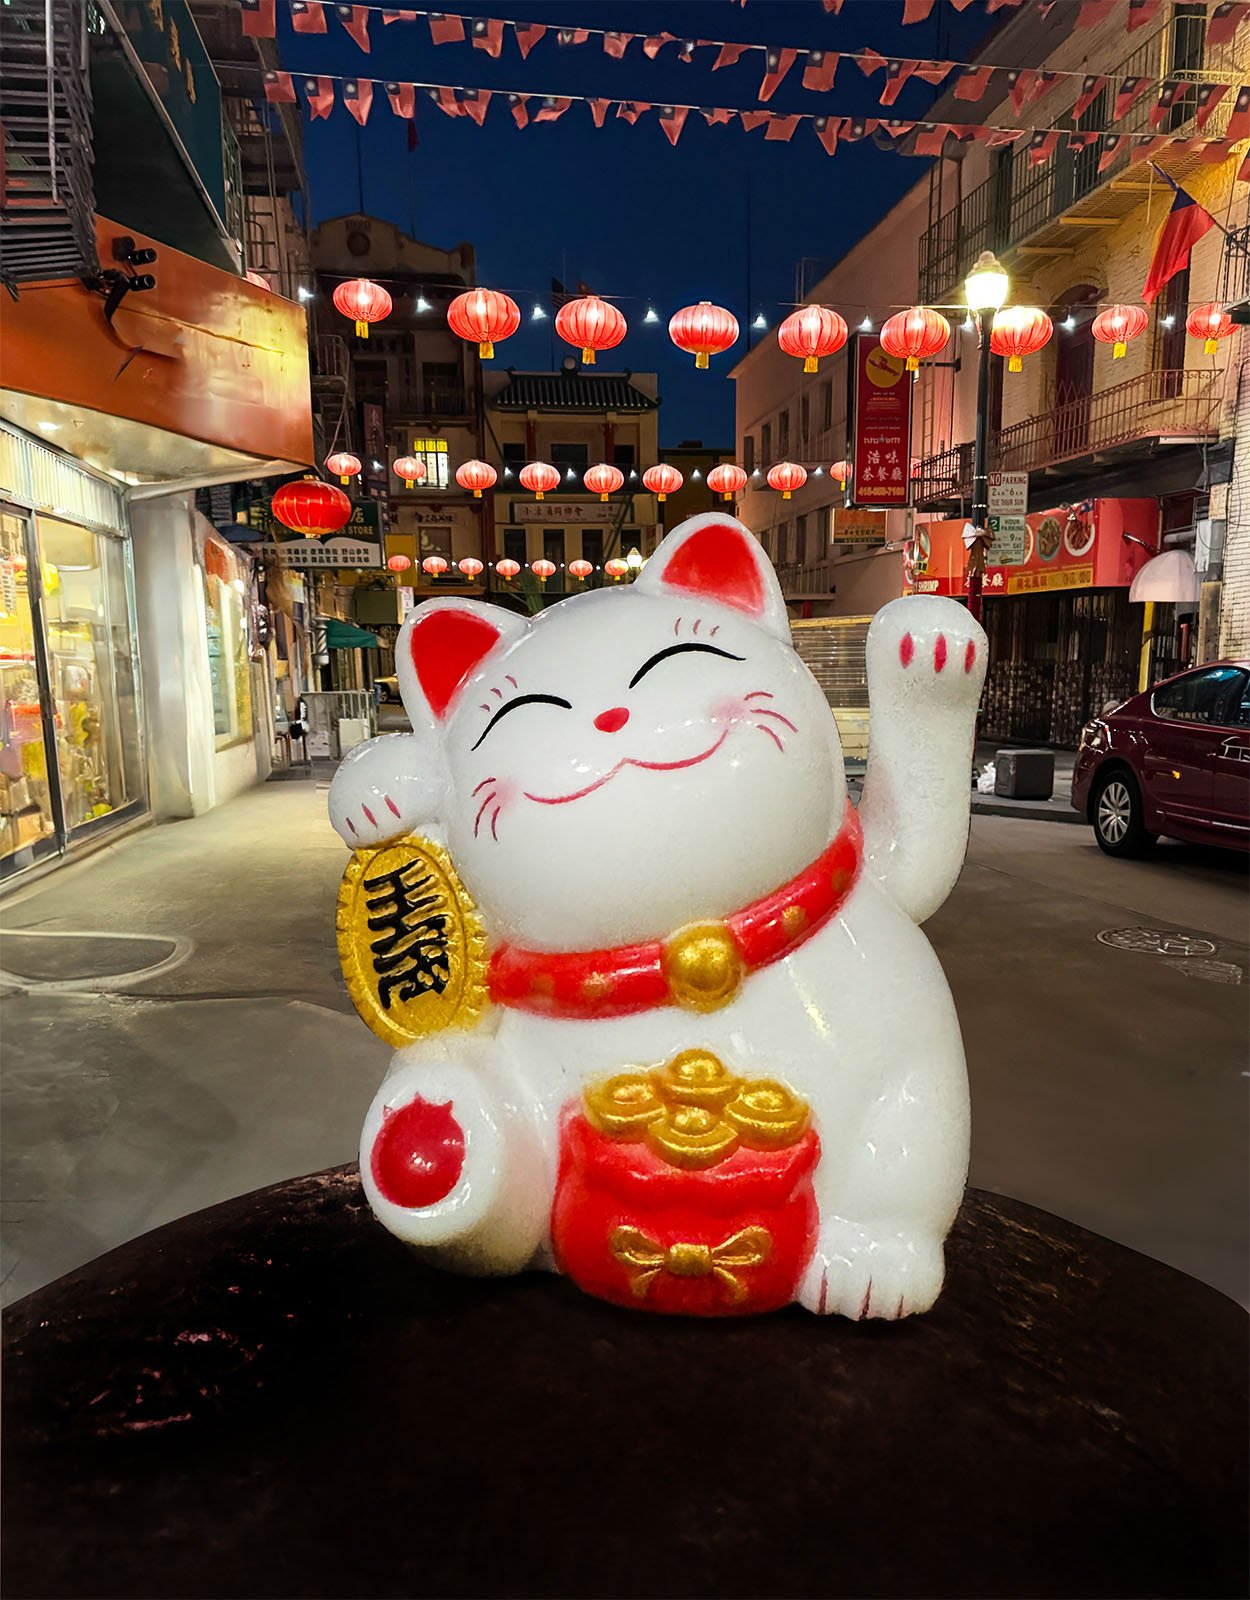 En primer plano se muestra de manera destacada una figura de Maneki-neko (gato que hace señales) blanca y roja con una pata levantada y detalles dorados.  Al fondo, una calle decorada con faroles rojos y tiendas cálidamente iluminadas al anochecer.